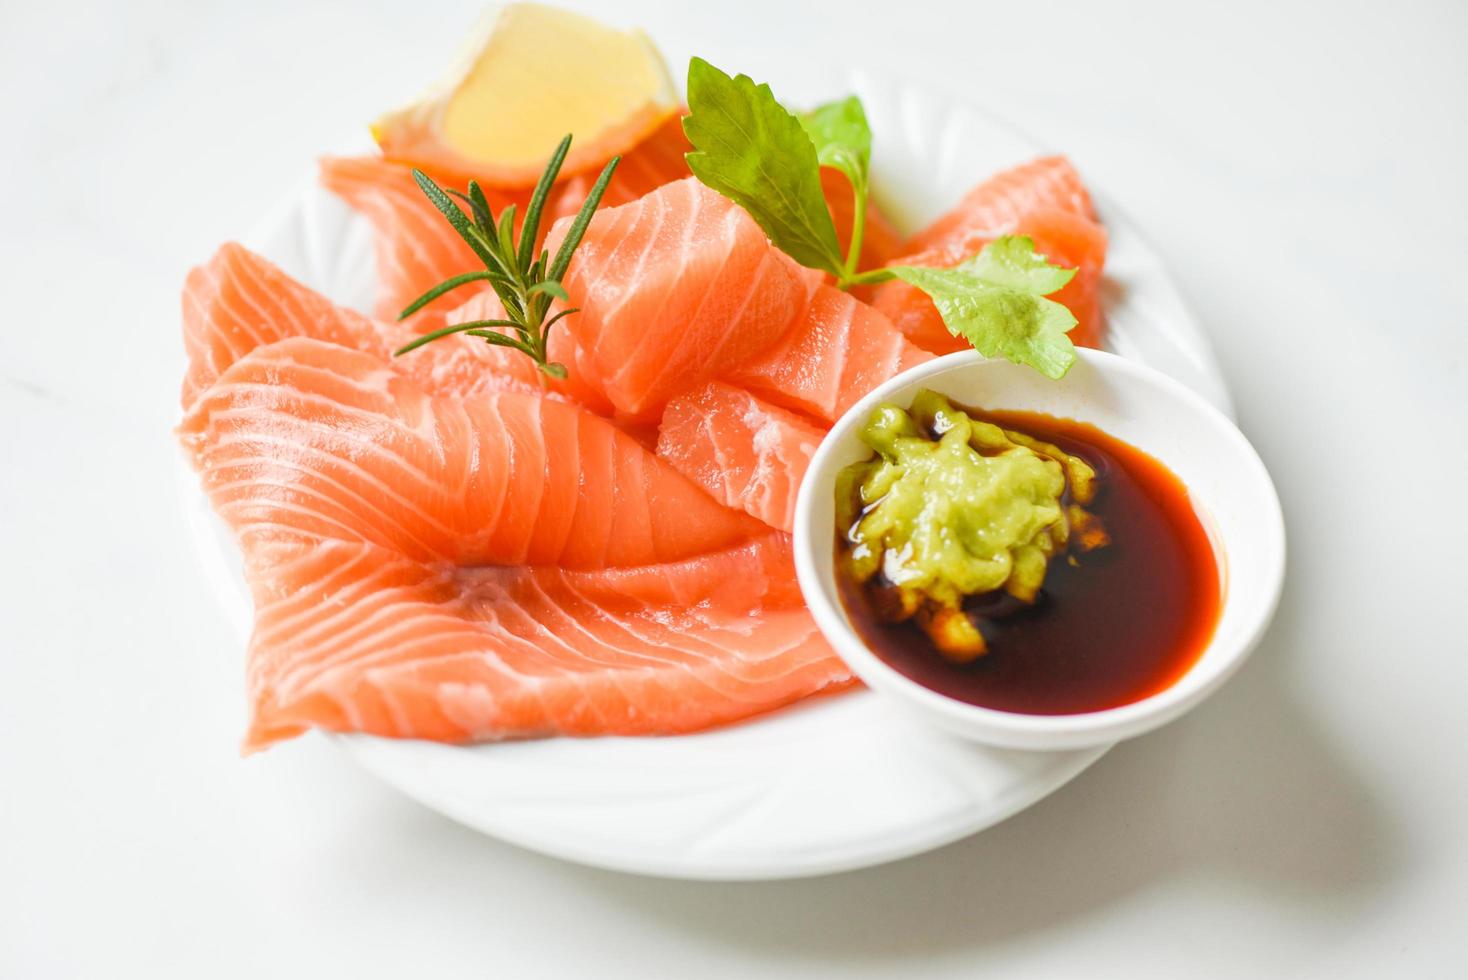 wasabi saus rauw Zalm filet Aan wit bord - vers Zalm vis voor Koken salade zeevruchten Japans voedsel foto